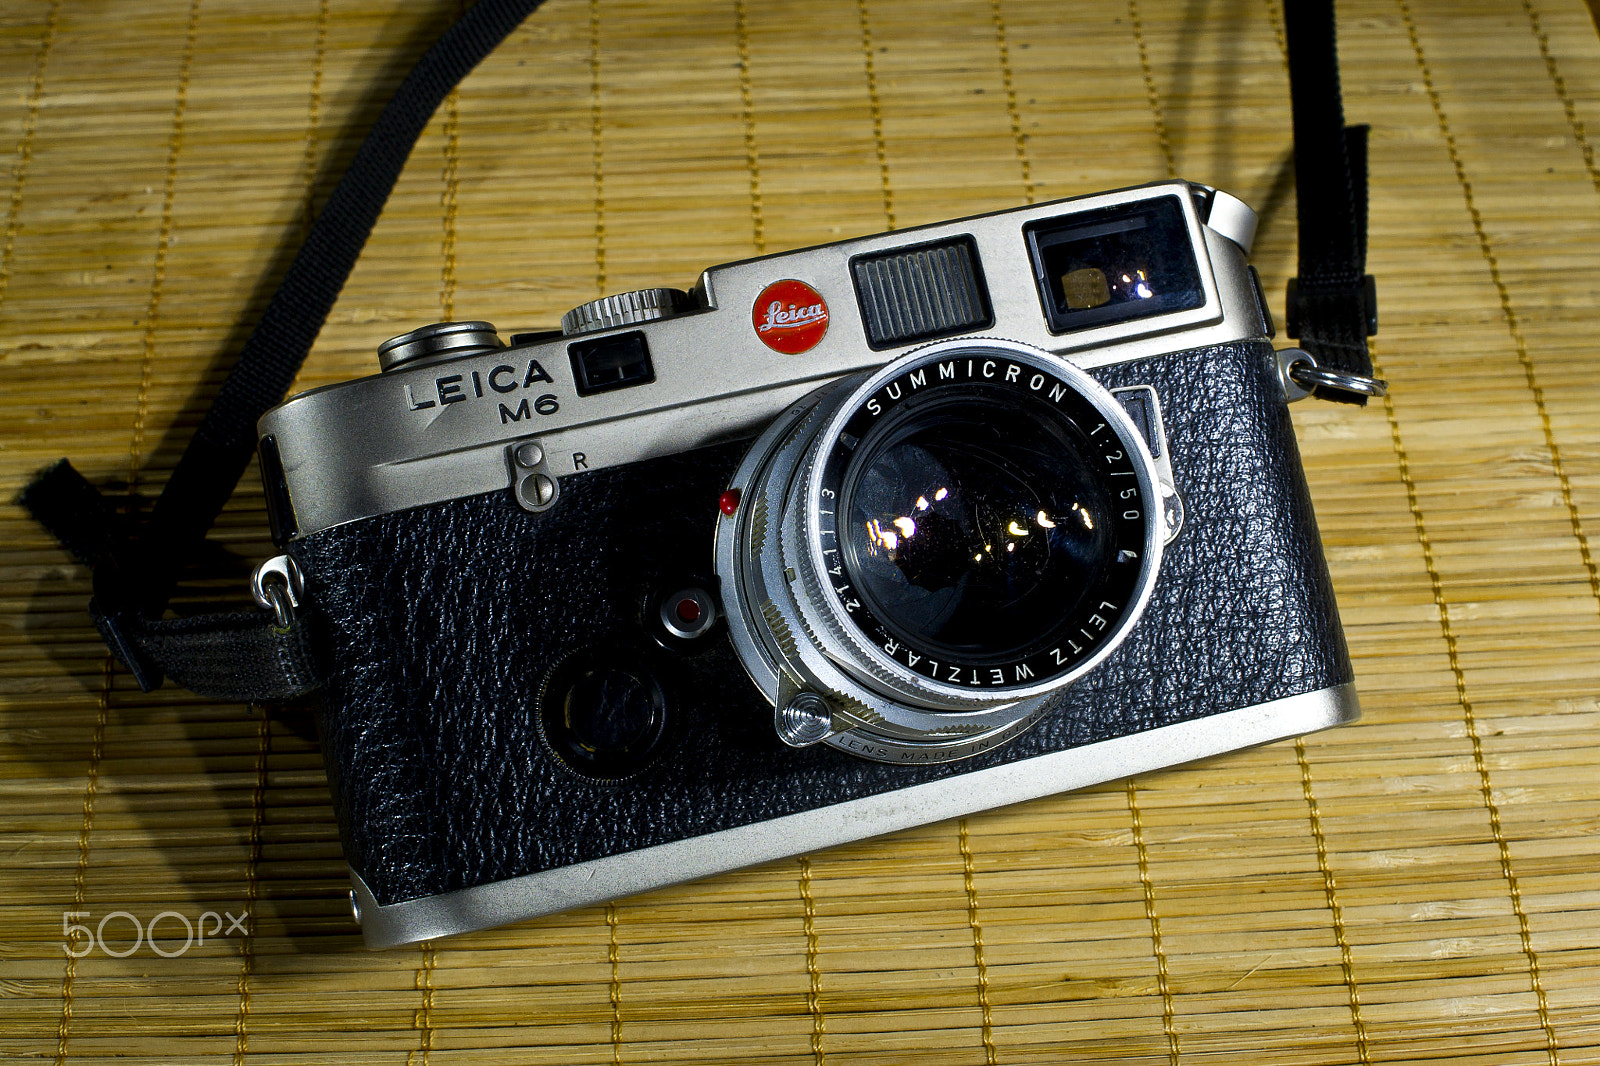 Sony Alpha DSLR-A500 sample photo. Leica m6 photography